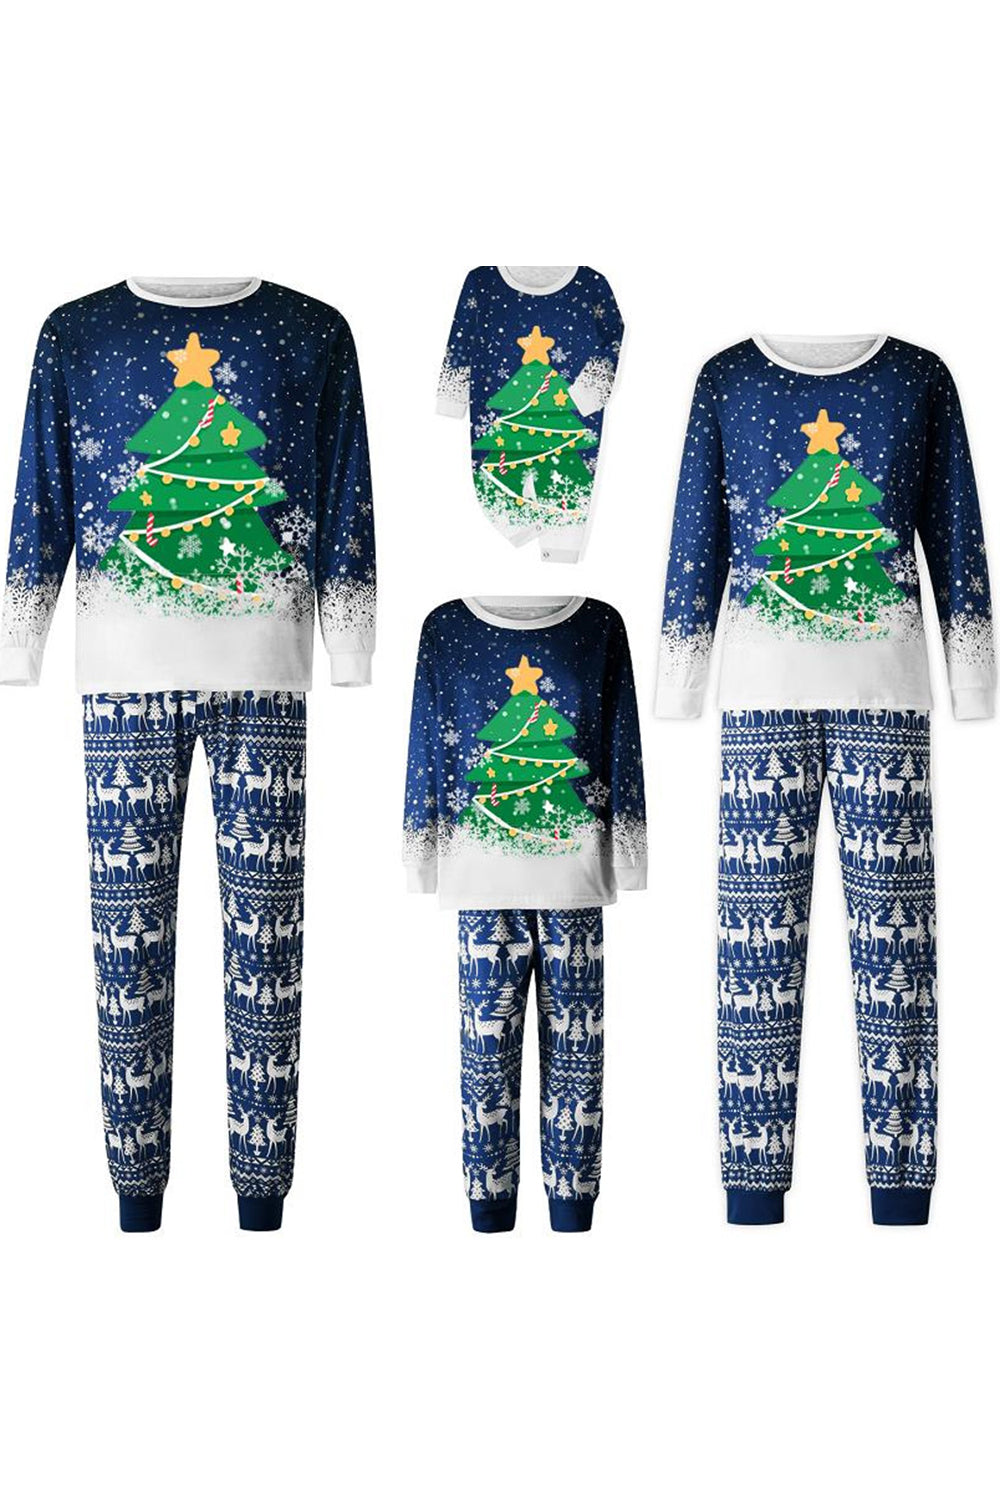 Christmas Family Matching Pajamas Set Blue Christmas Tree Print Pajamas